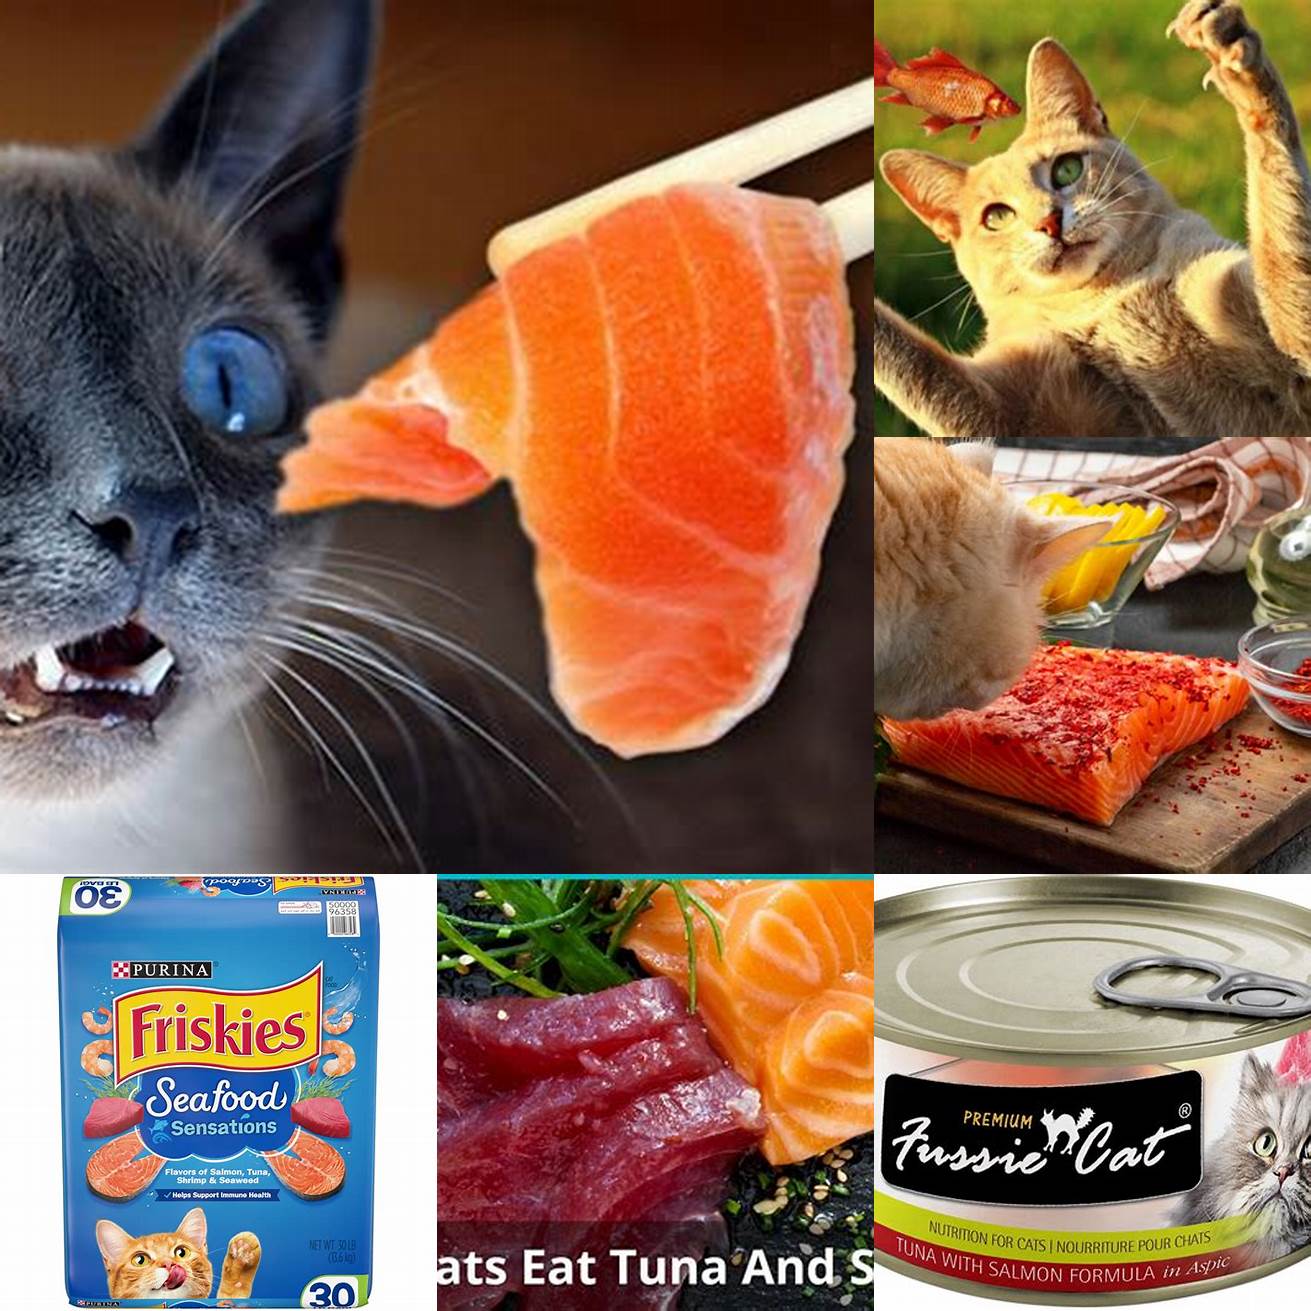 Salmon or tuna